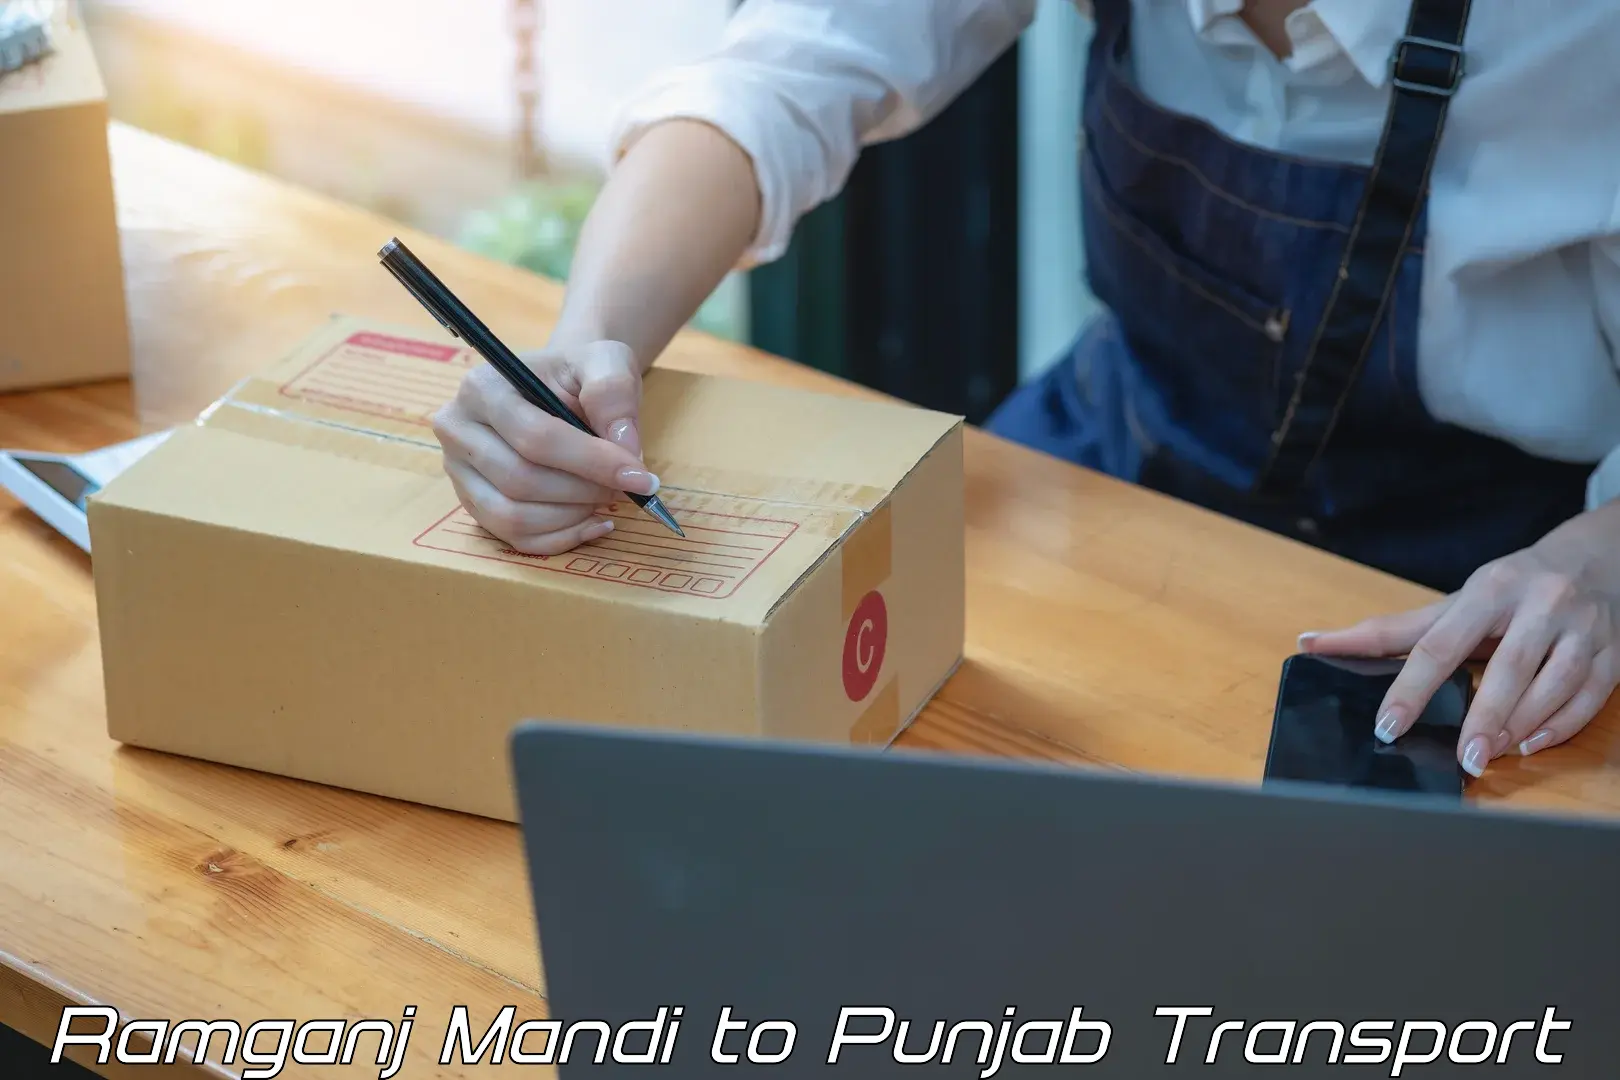 Two wheeler parcel service Ramganj Mandi to Punjab